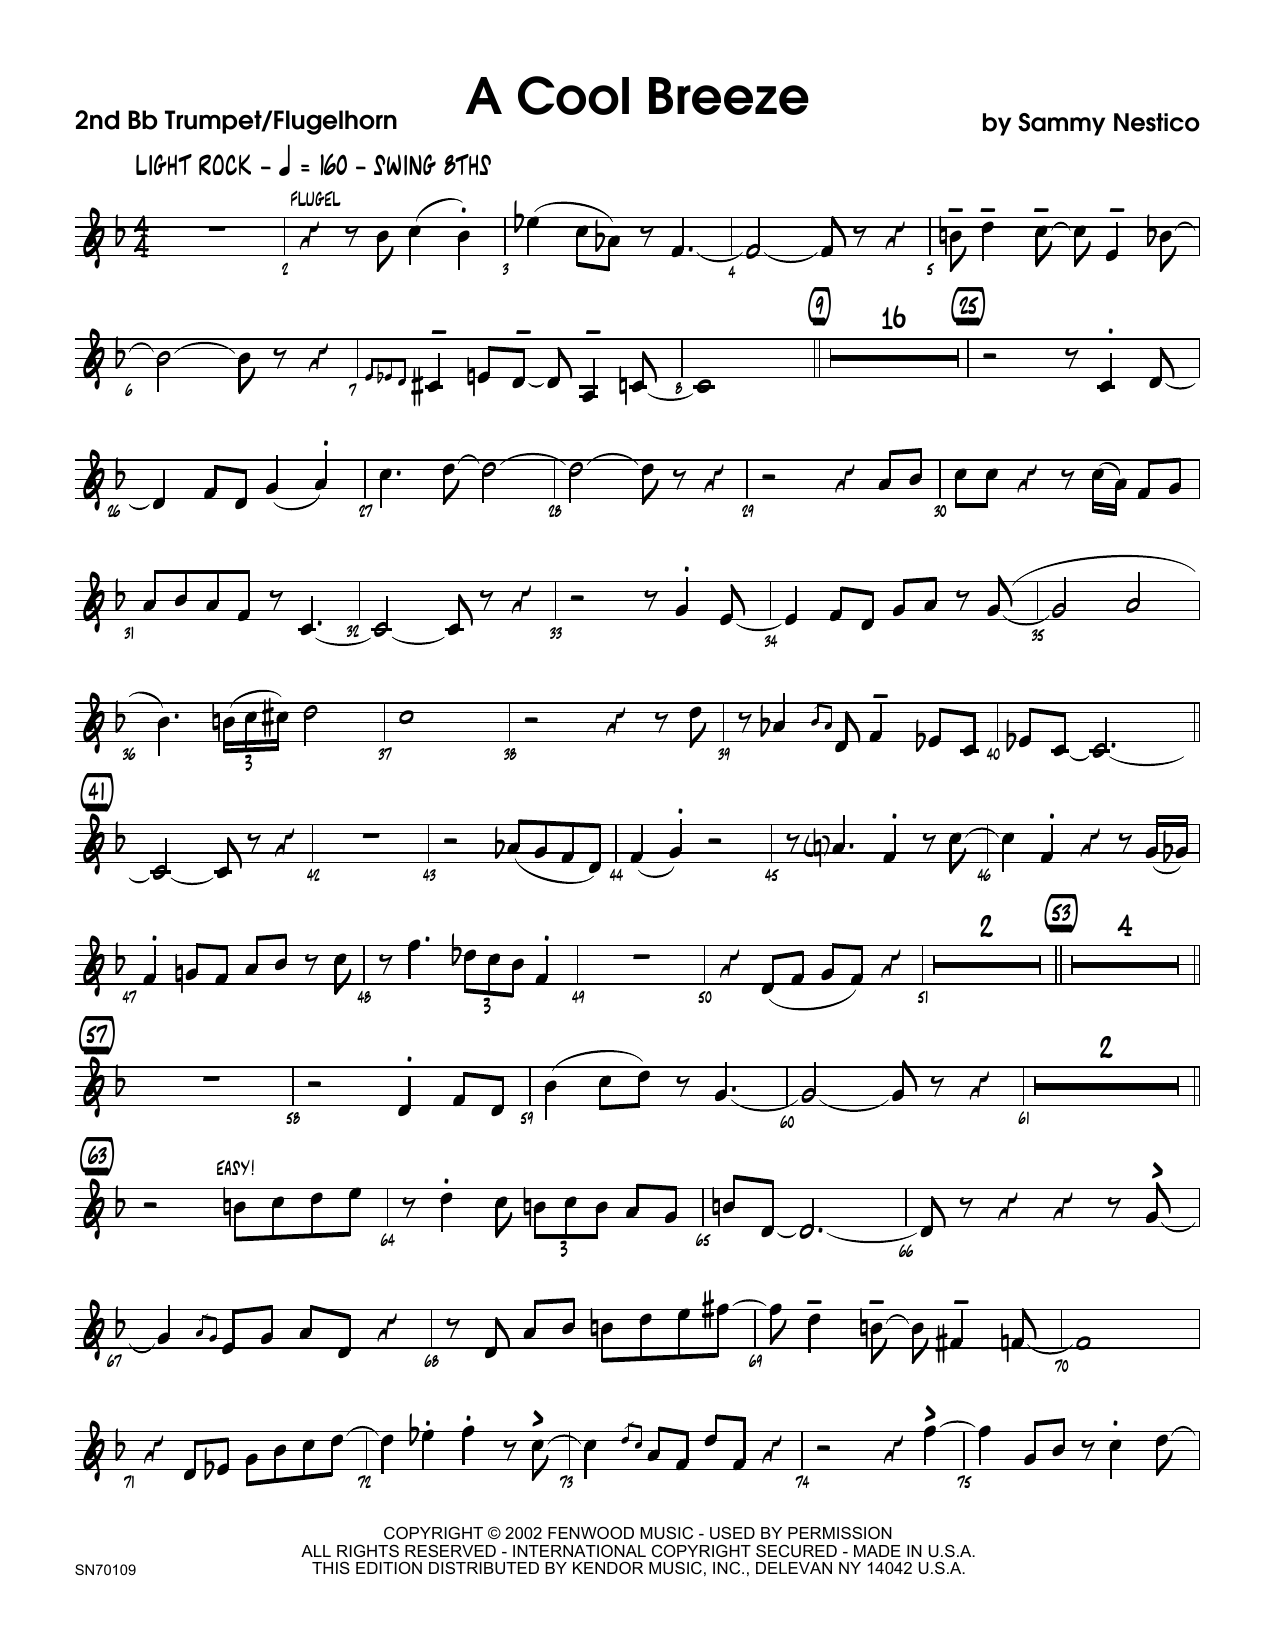 Download Sammy Nestico A Cool Breeze - 2nd Bb Trumpet Sheet Music